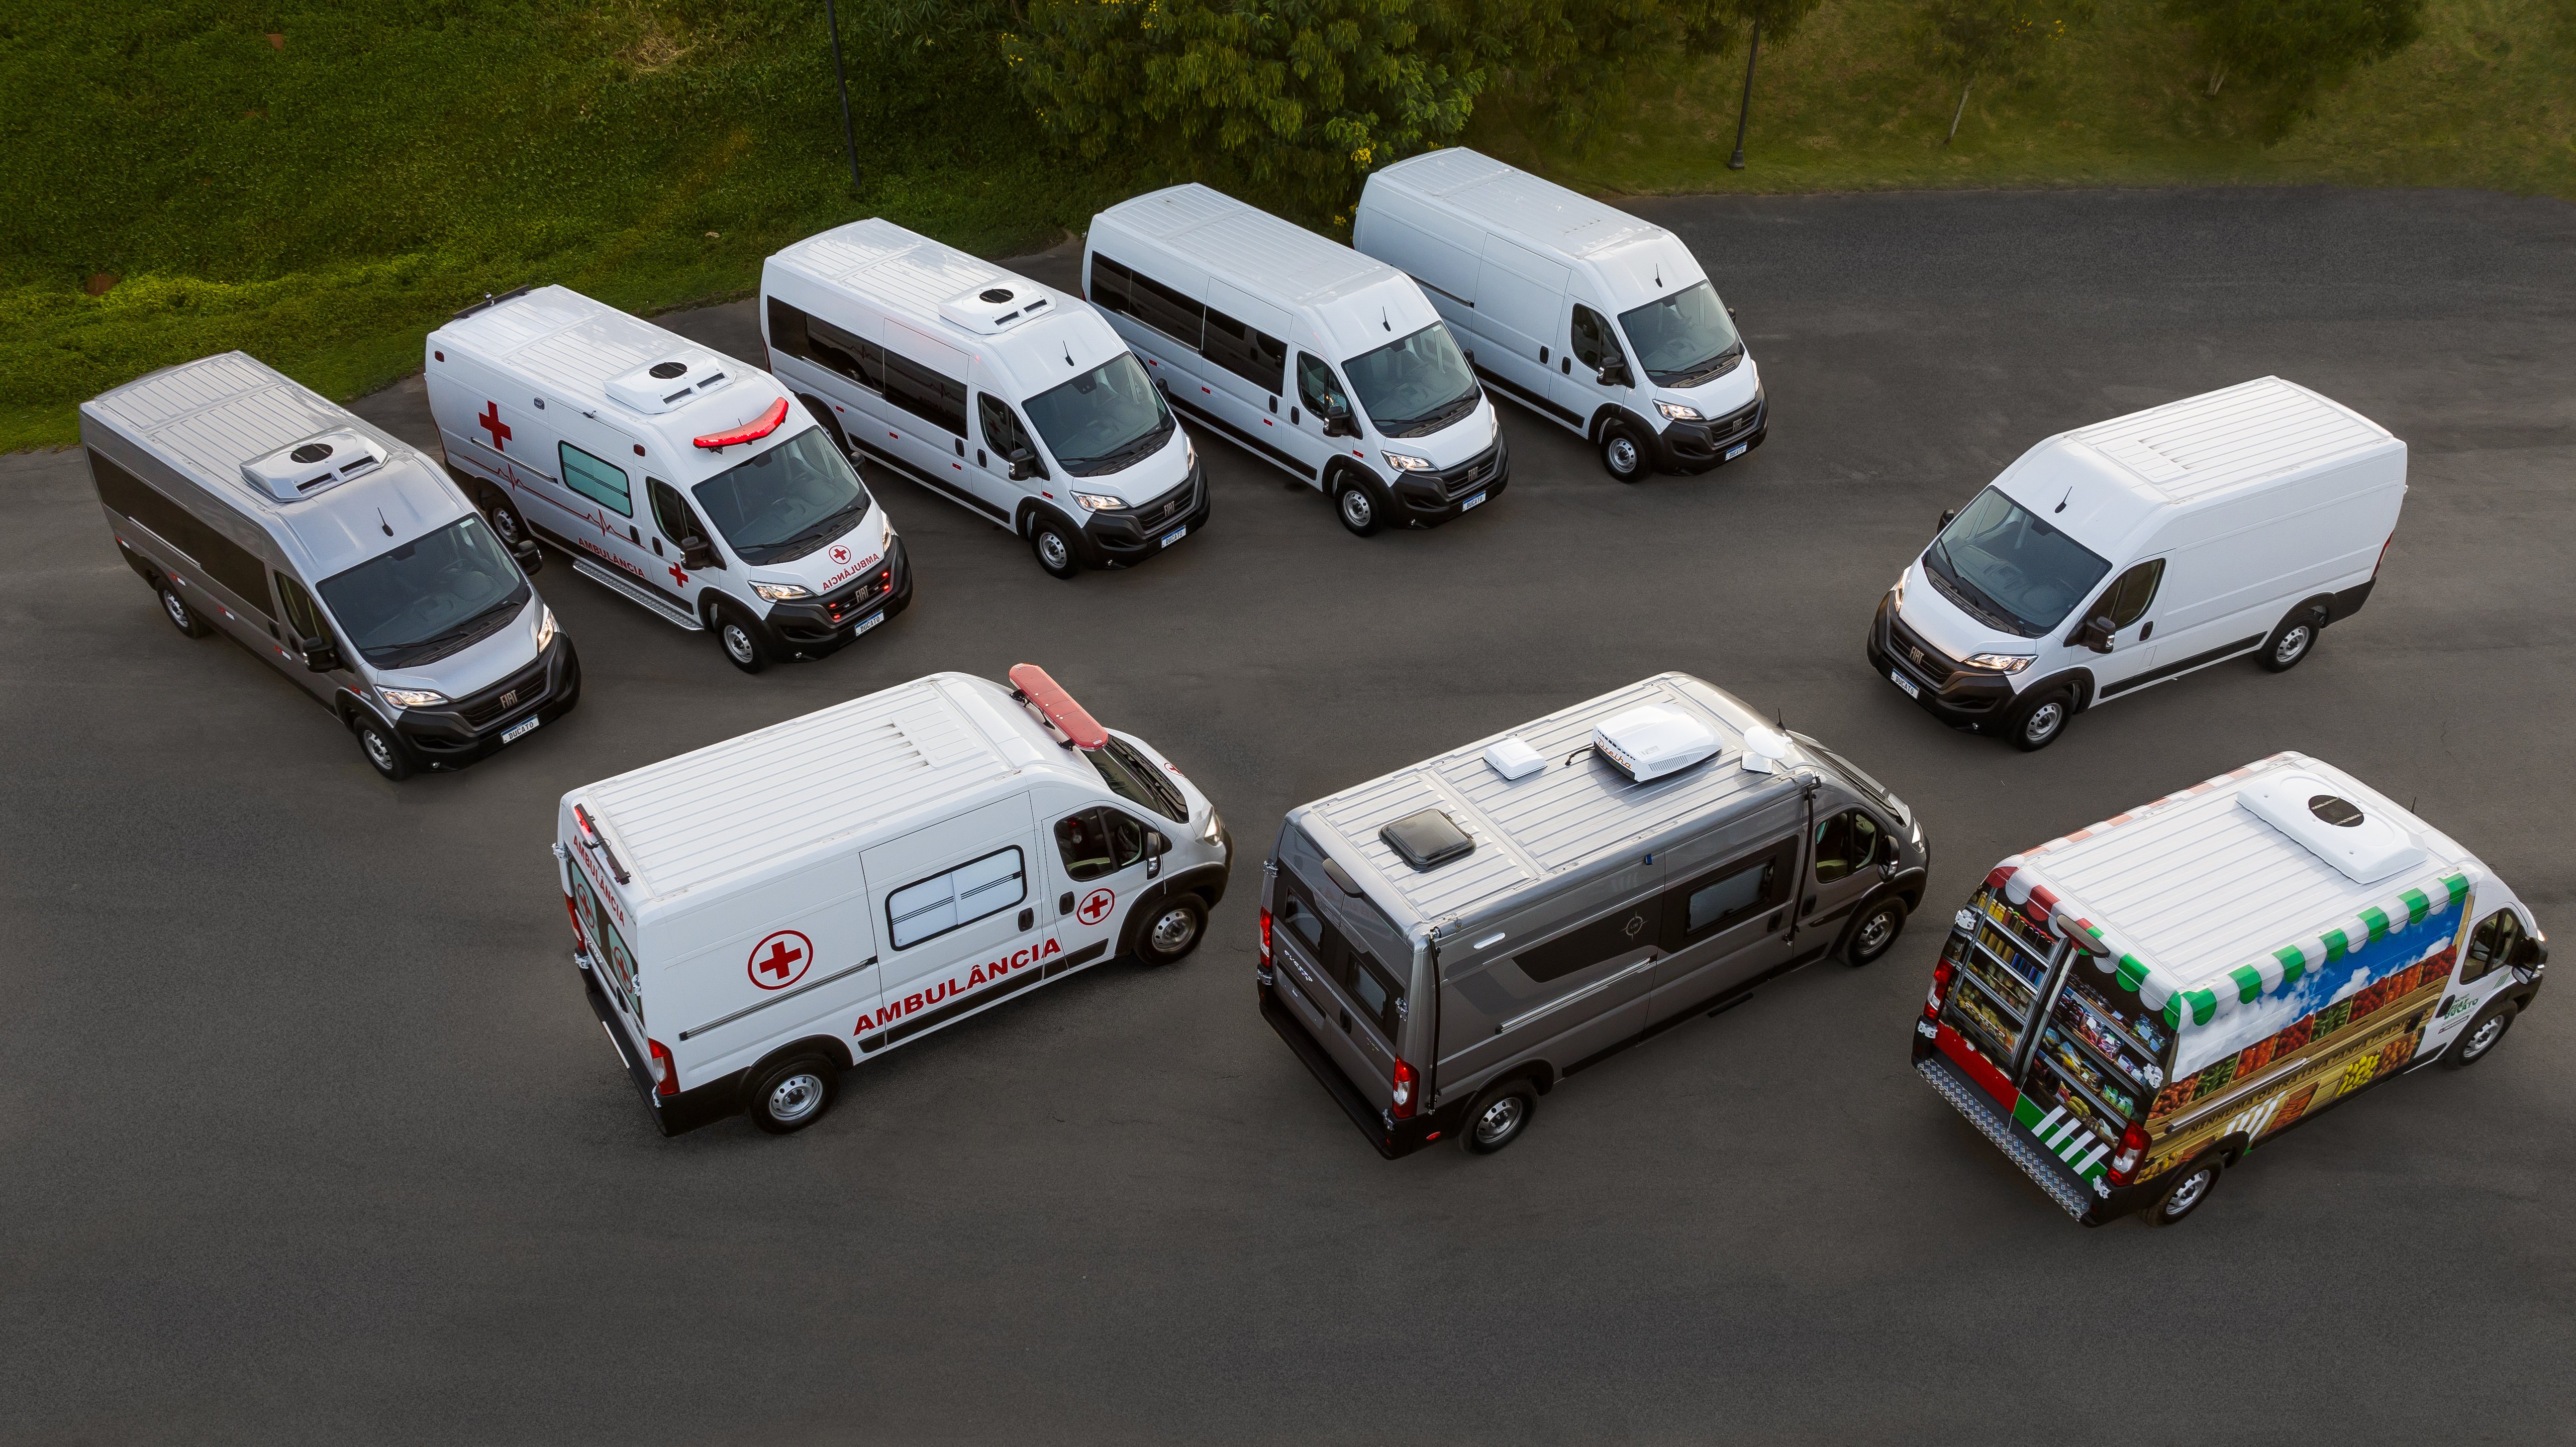 Quarta geração da van chega ao mercado com a promessa de mais desempenho e economia. Modelo tem cinco opções de configuração